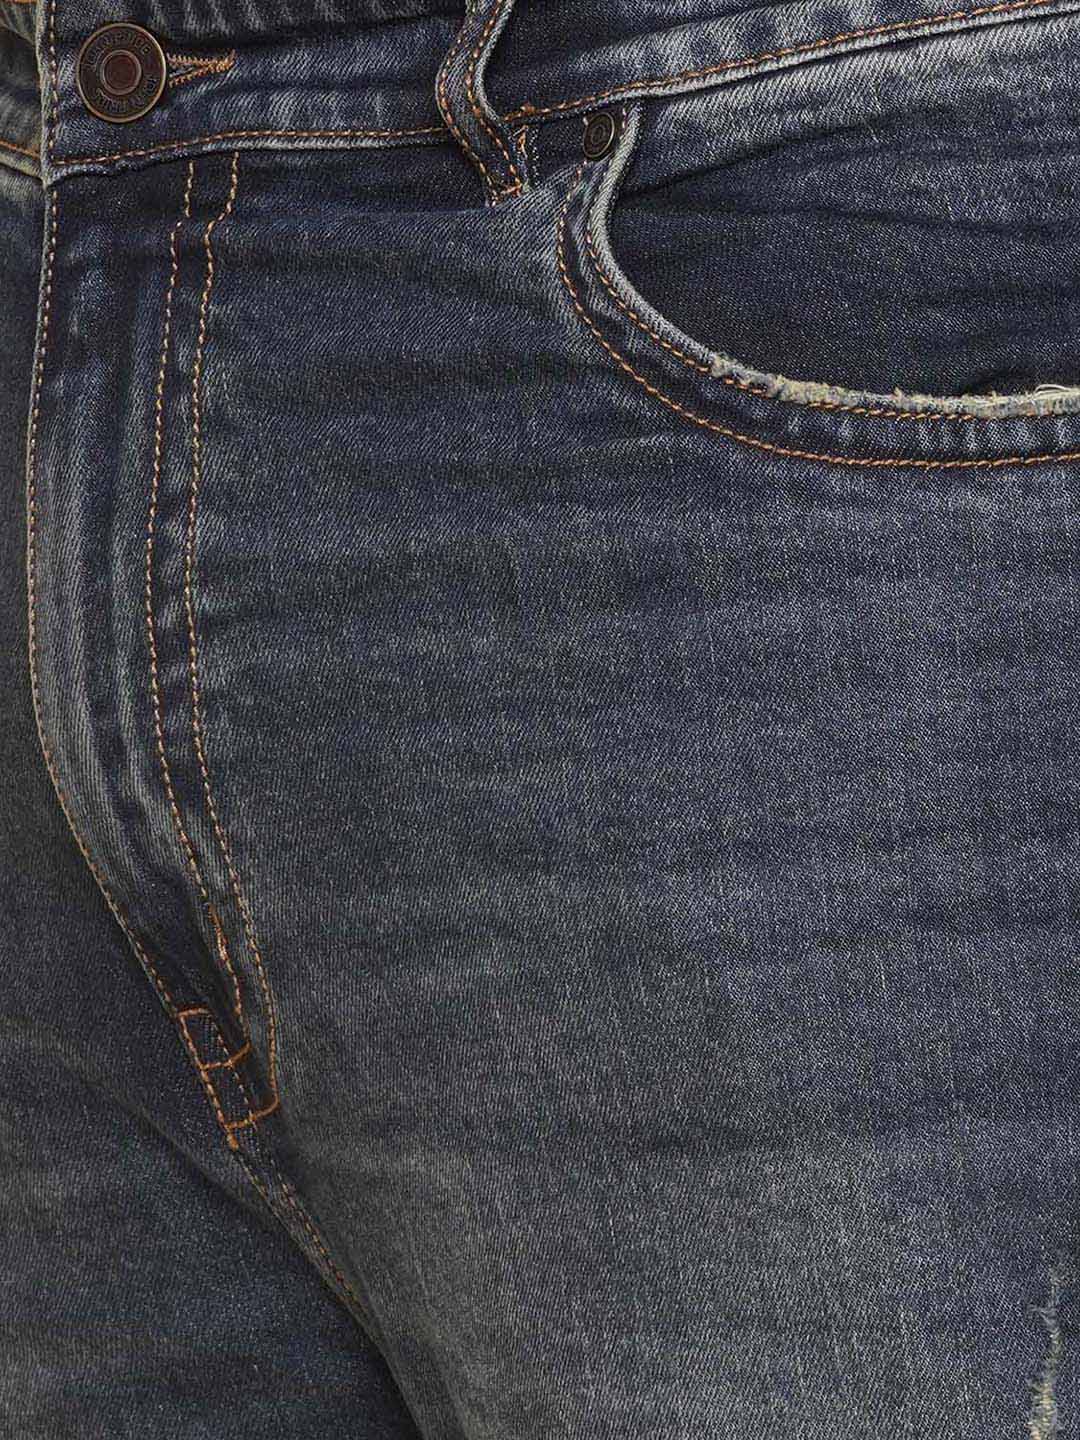 bottomwear/jeans/JPJ27105/jpj27105-2.jpg